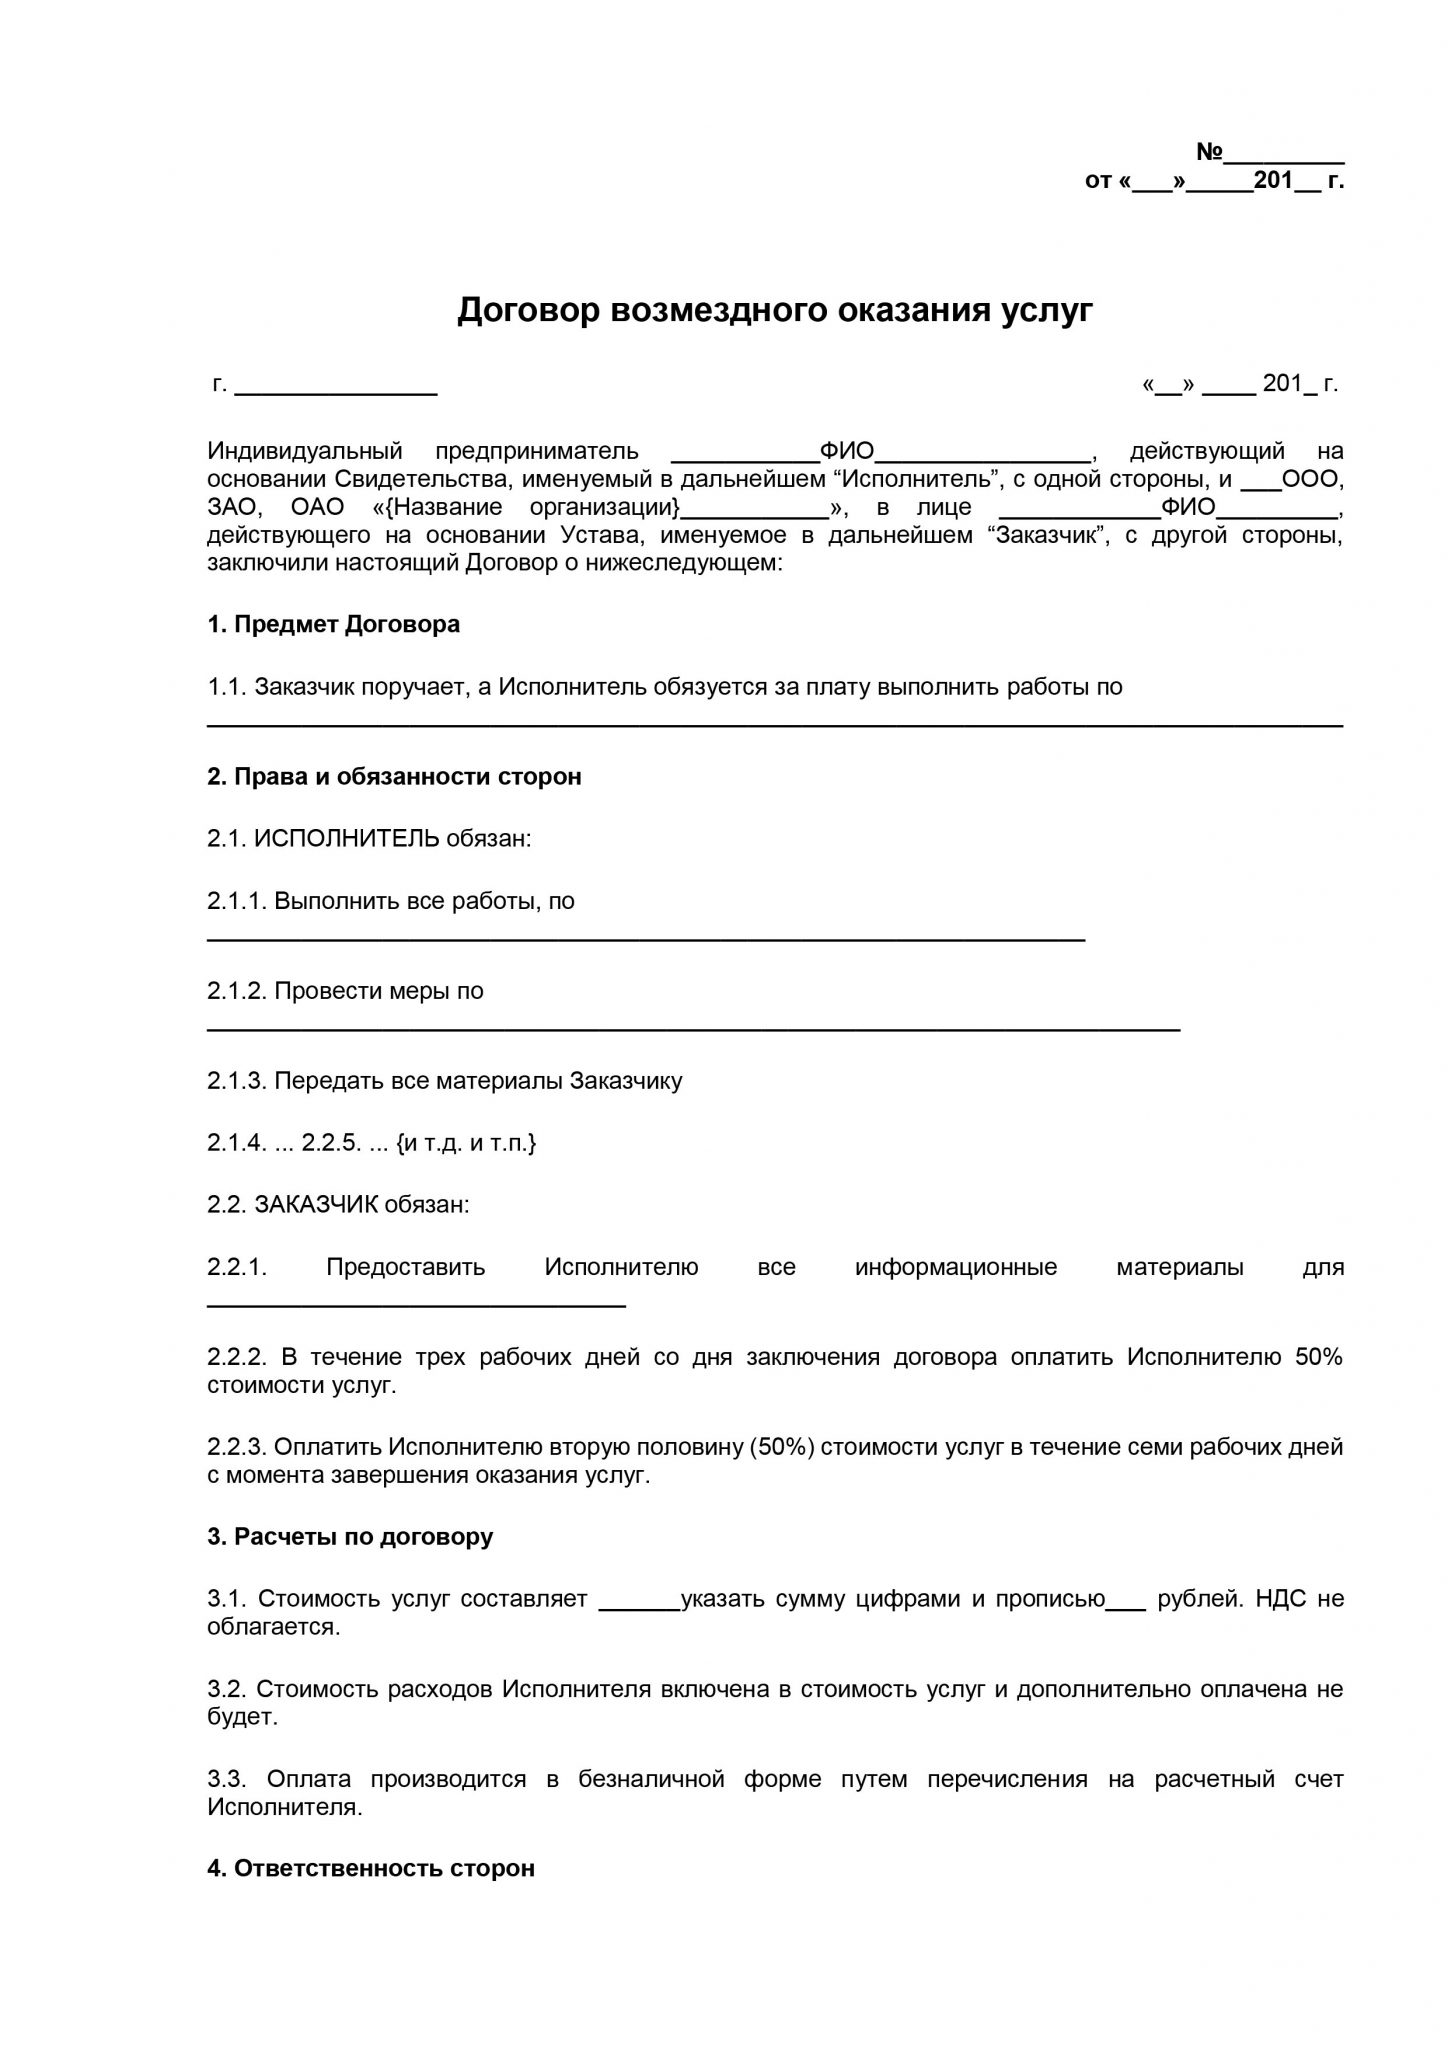 Договор ООО С ИП на оказание услуг образец 2020